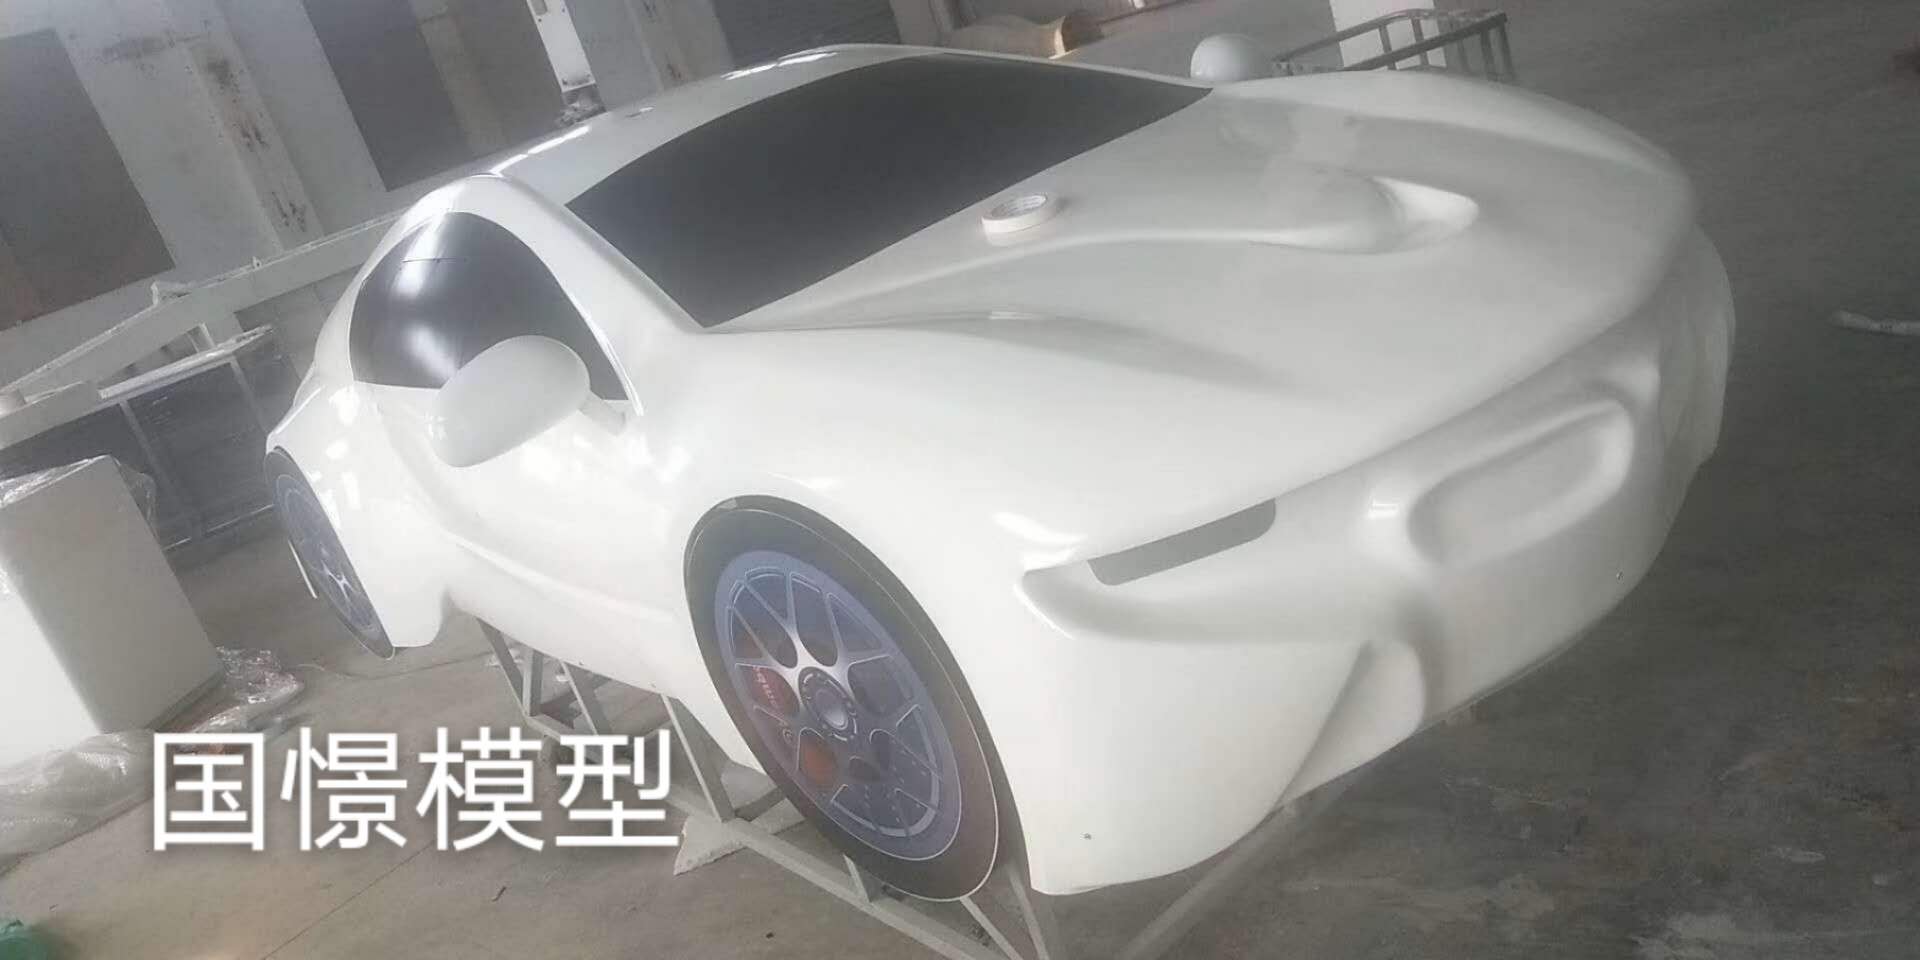 绥滨县车辆模型